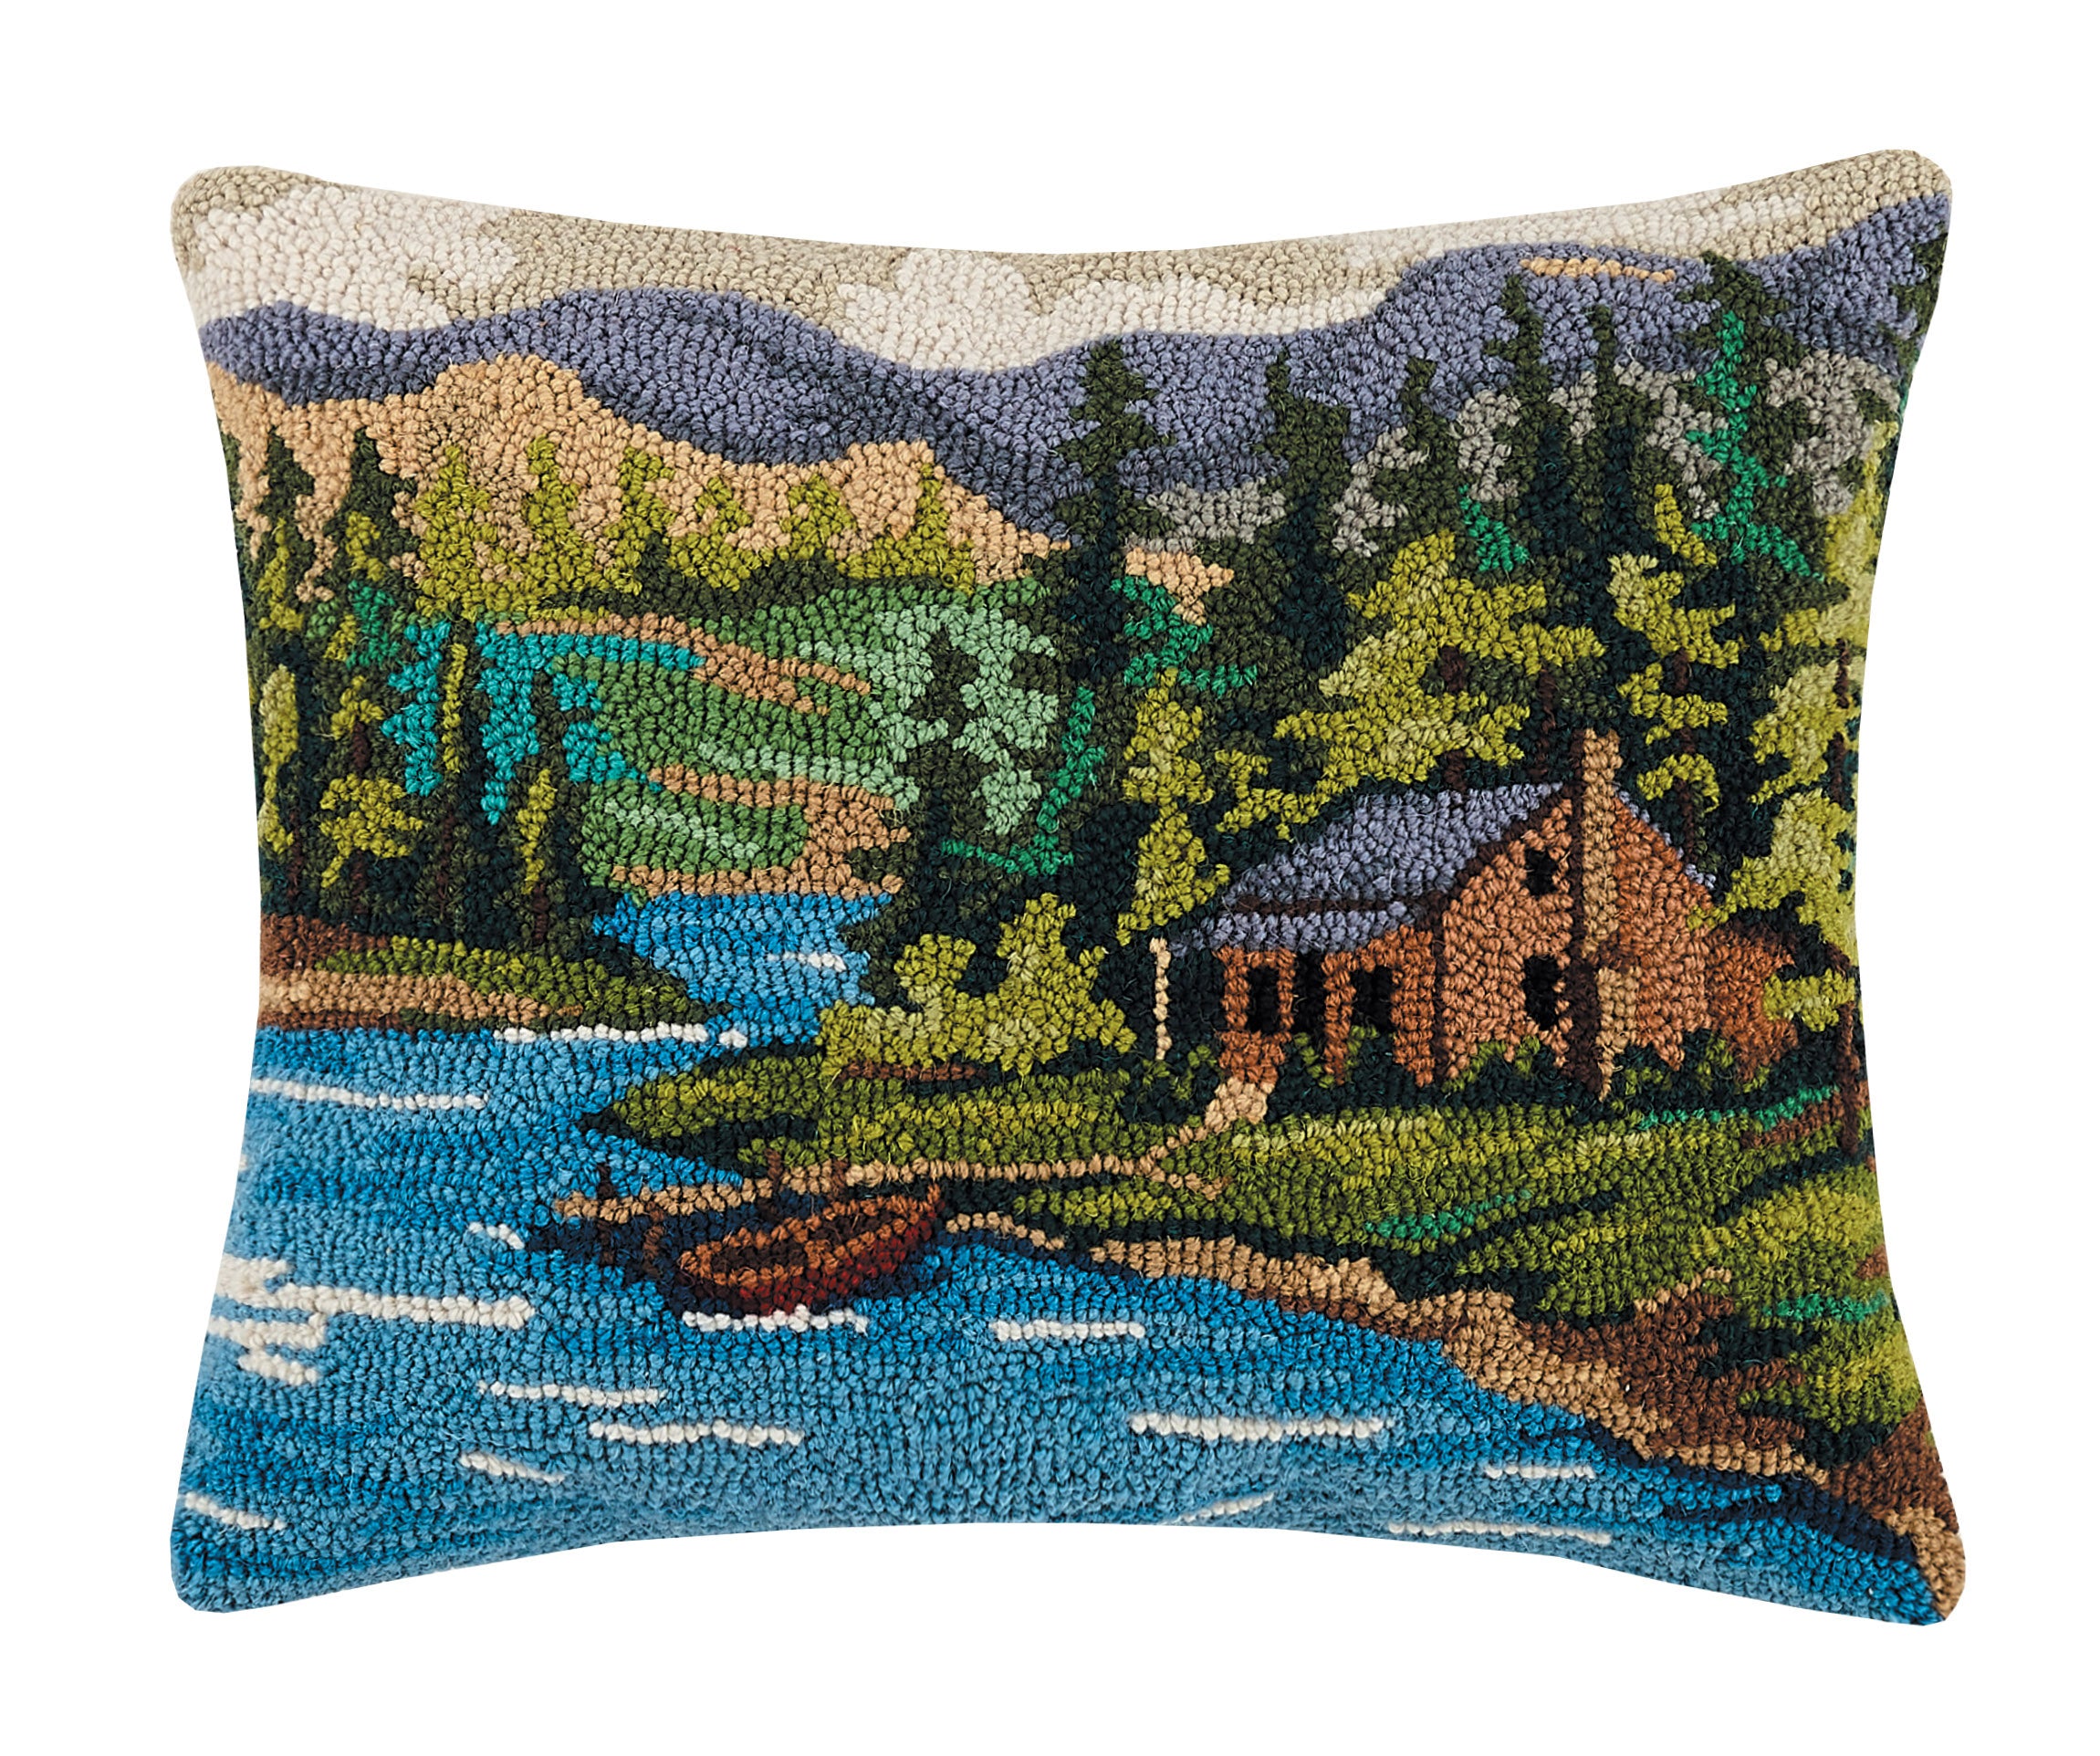 'Lakeside Cabin Cushion'